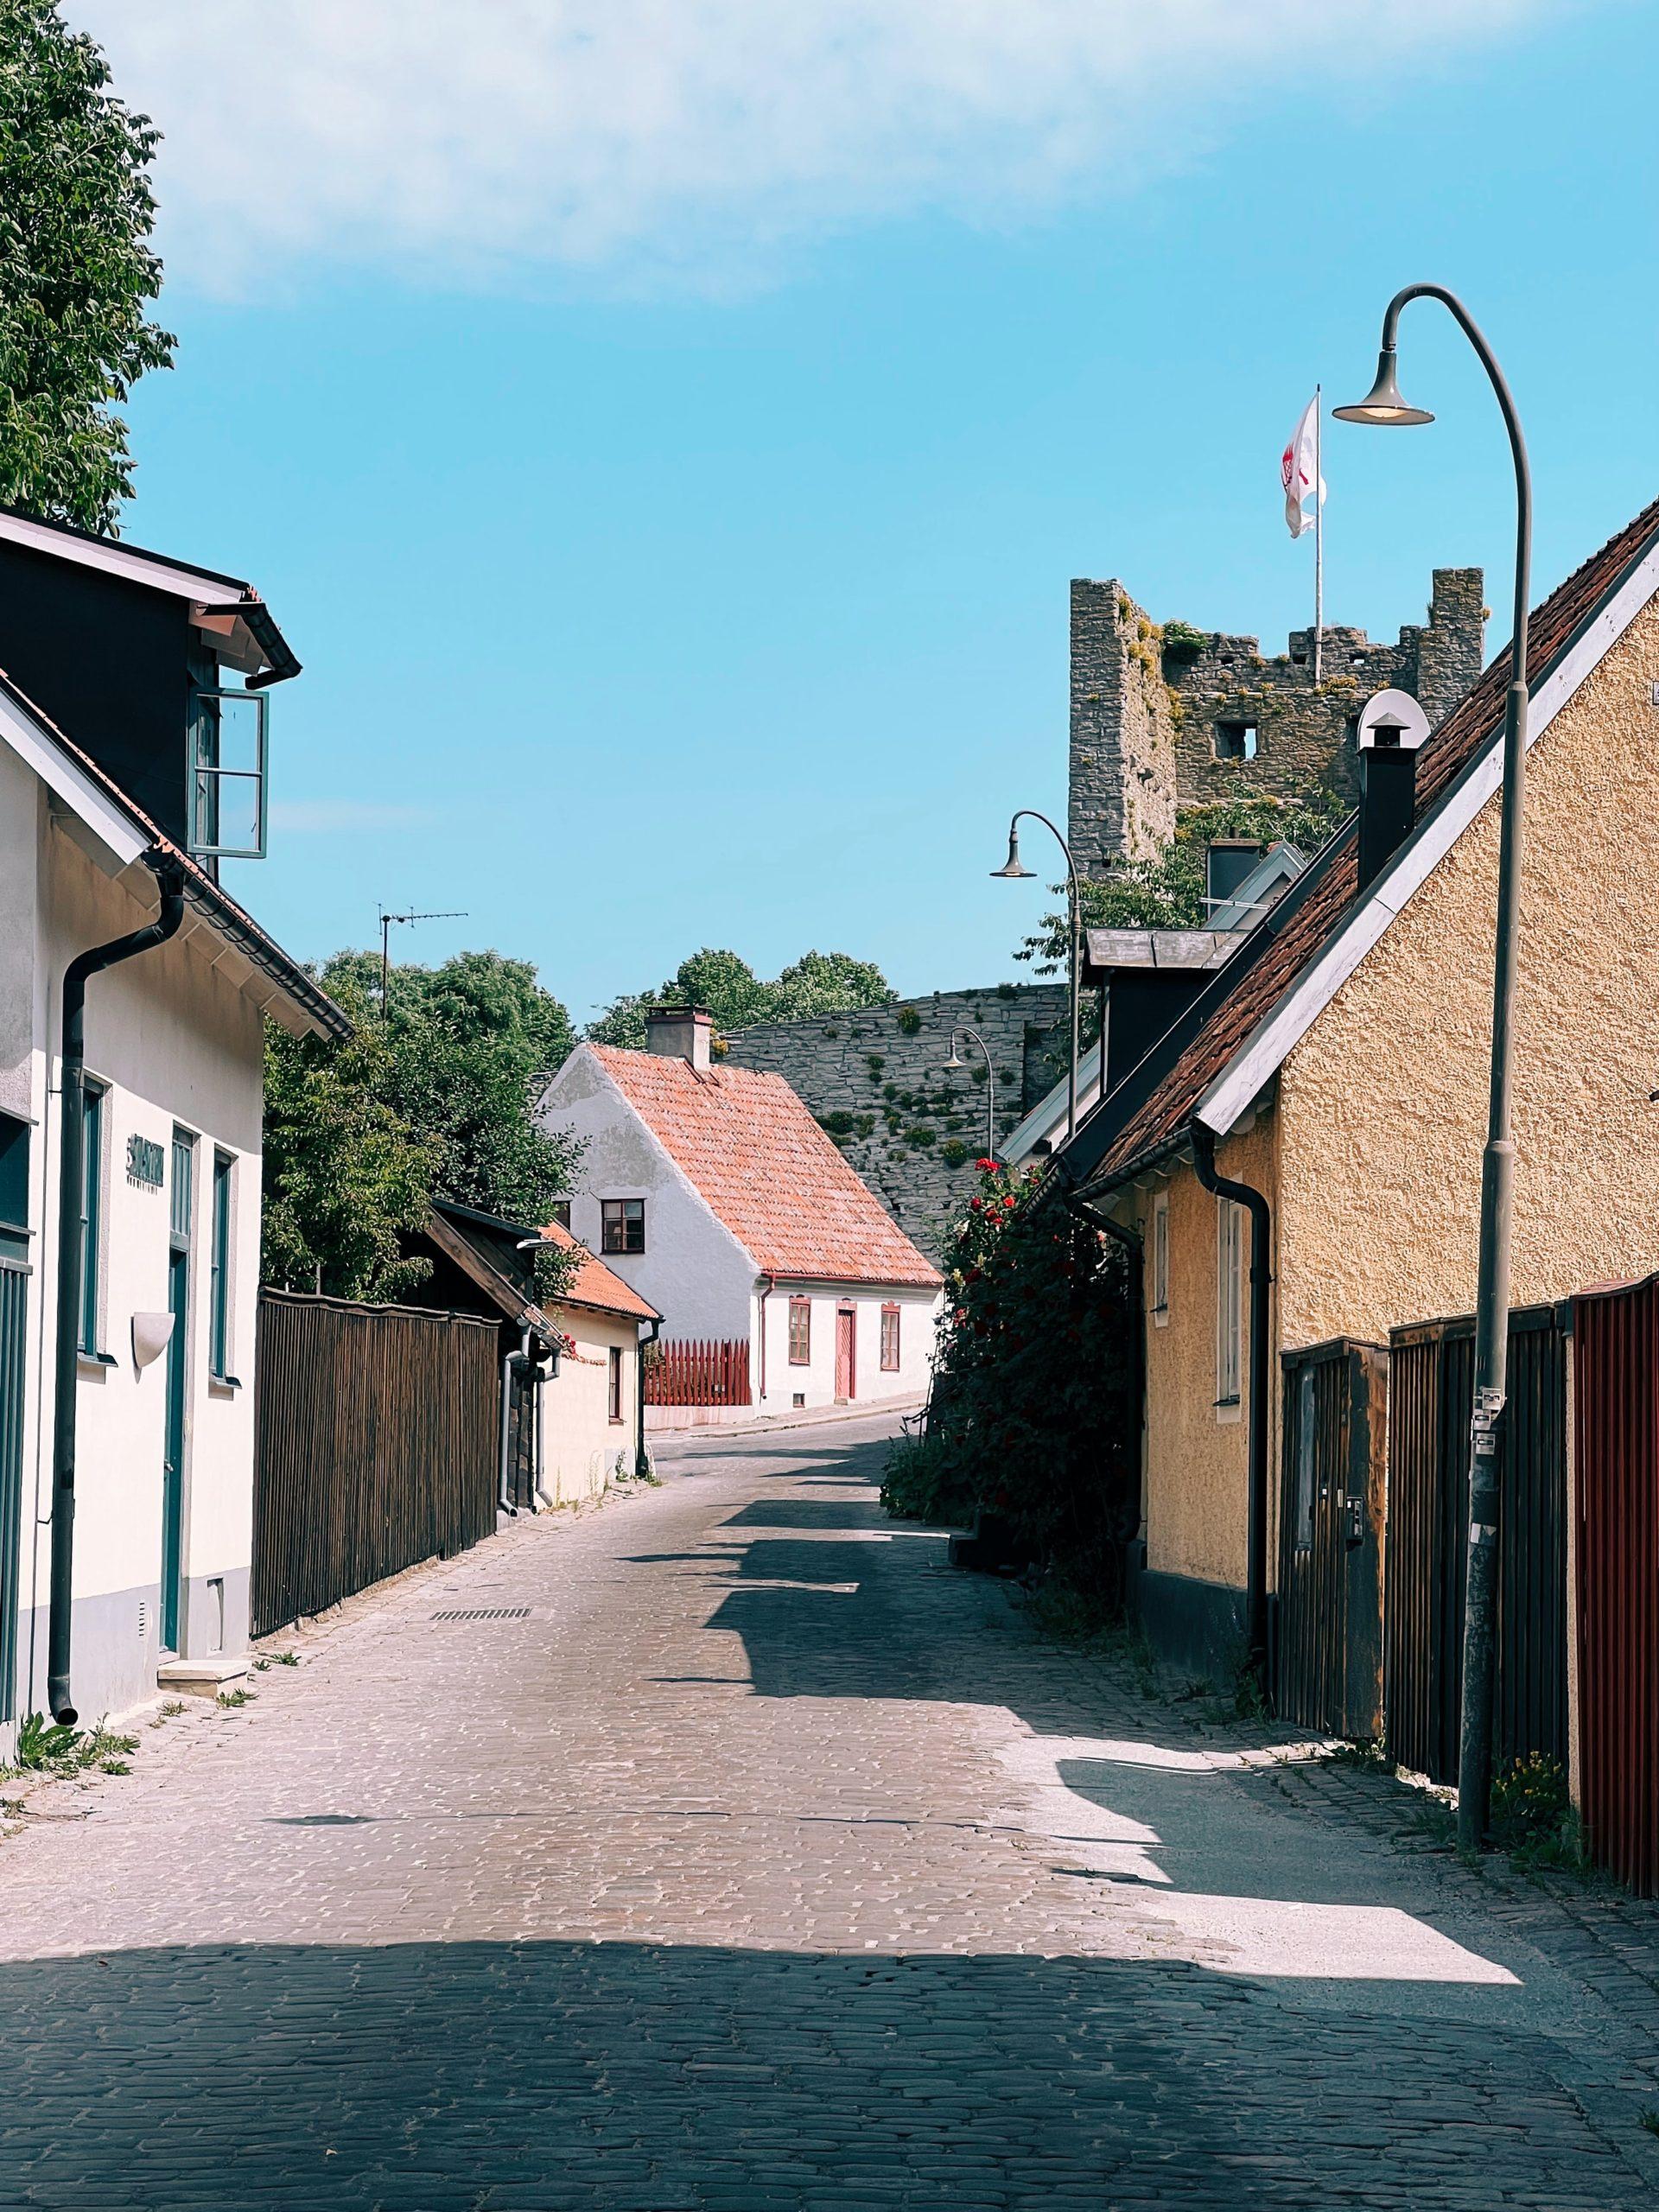 Ekonomisk förvaltning för bostadsrättsföreningar (BRF) på Gotland